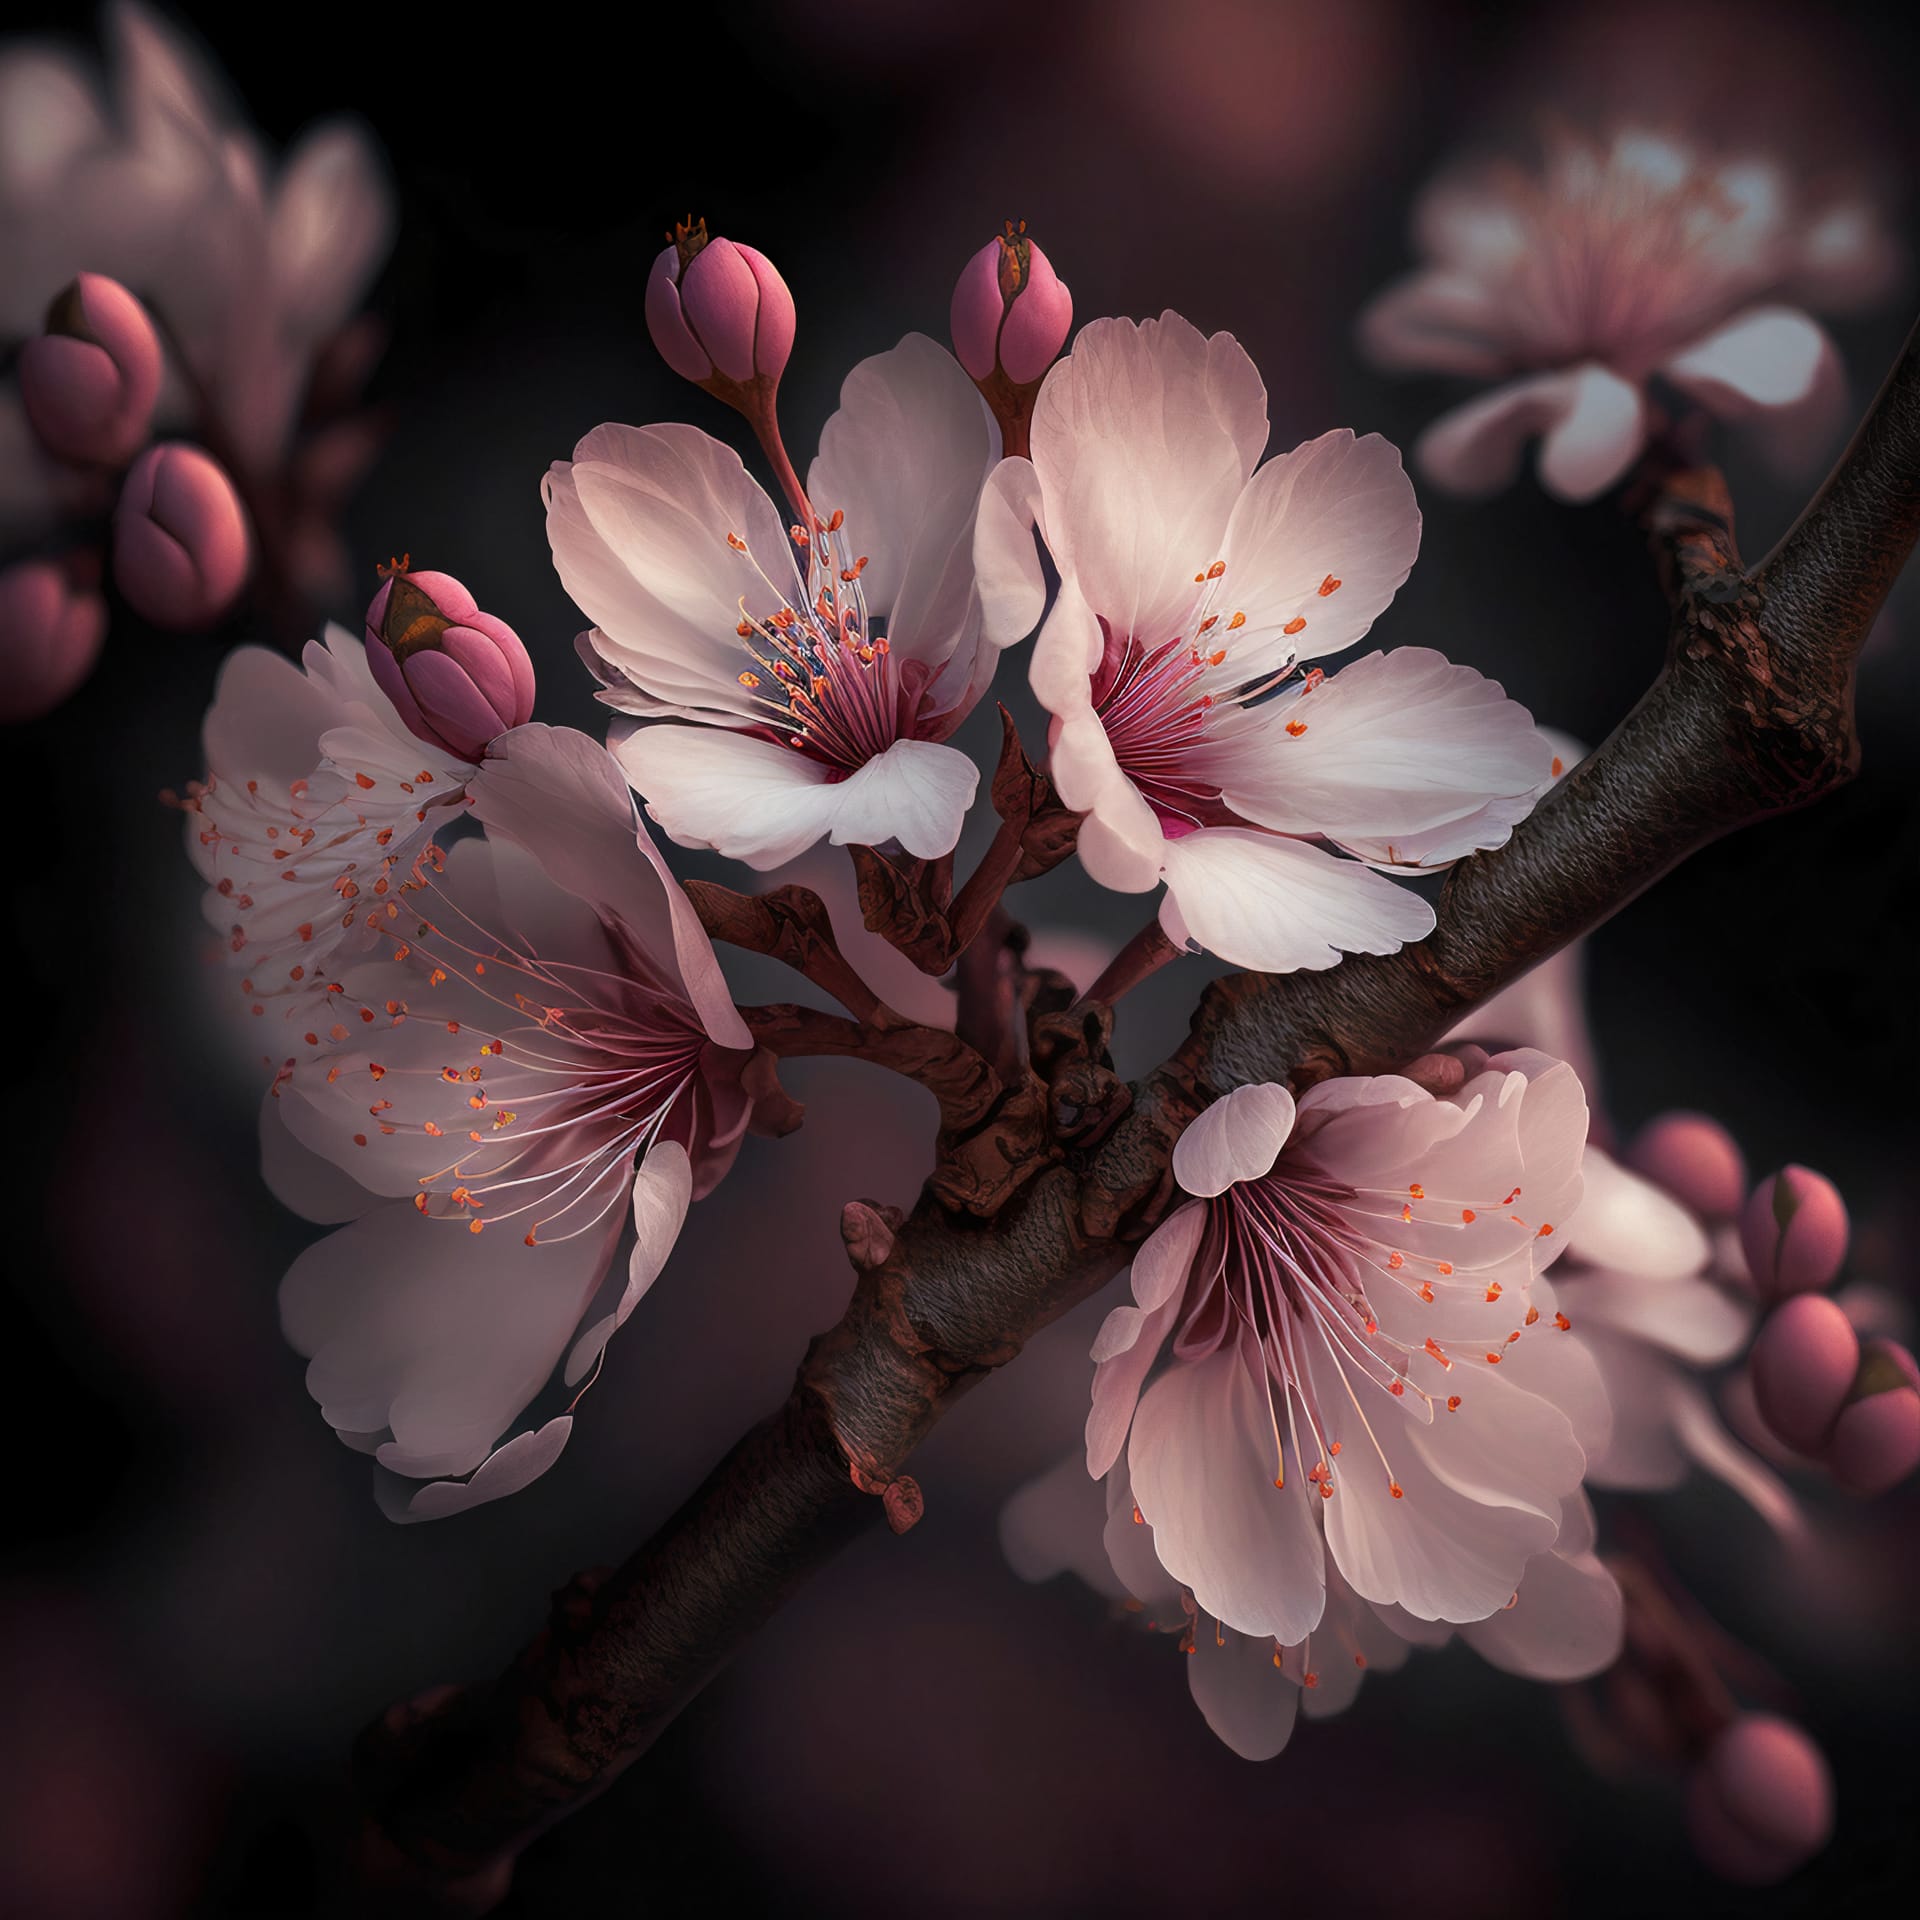 Cherry blossom beautiful sakura flowers pink cherry flowers nice image